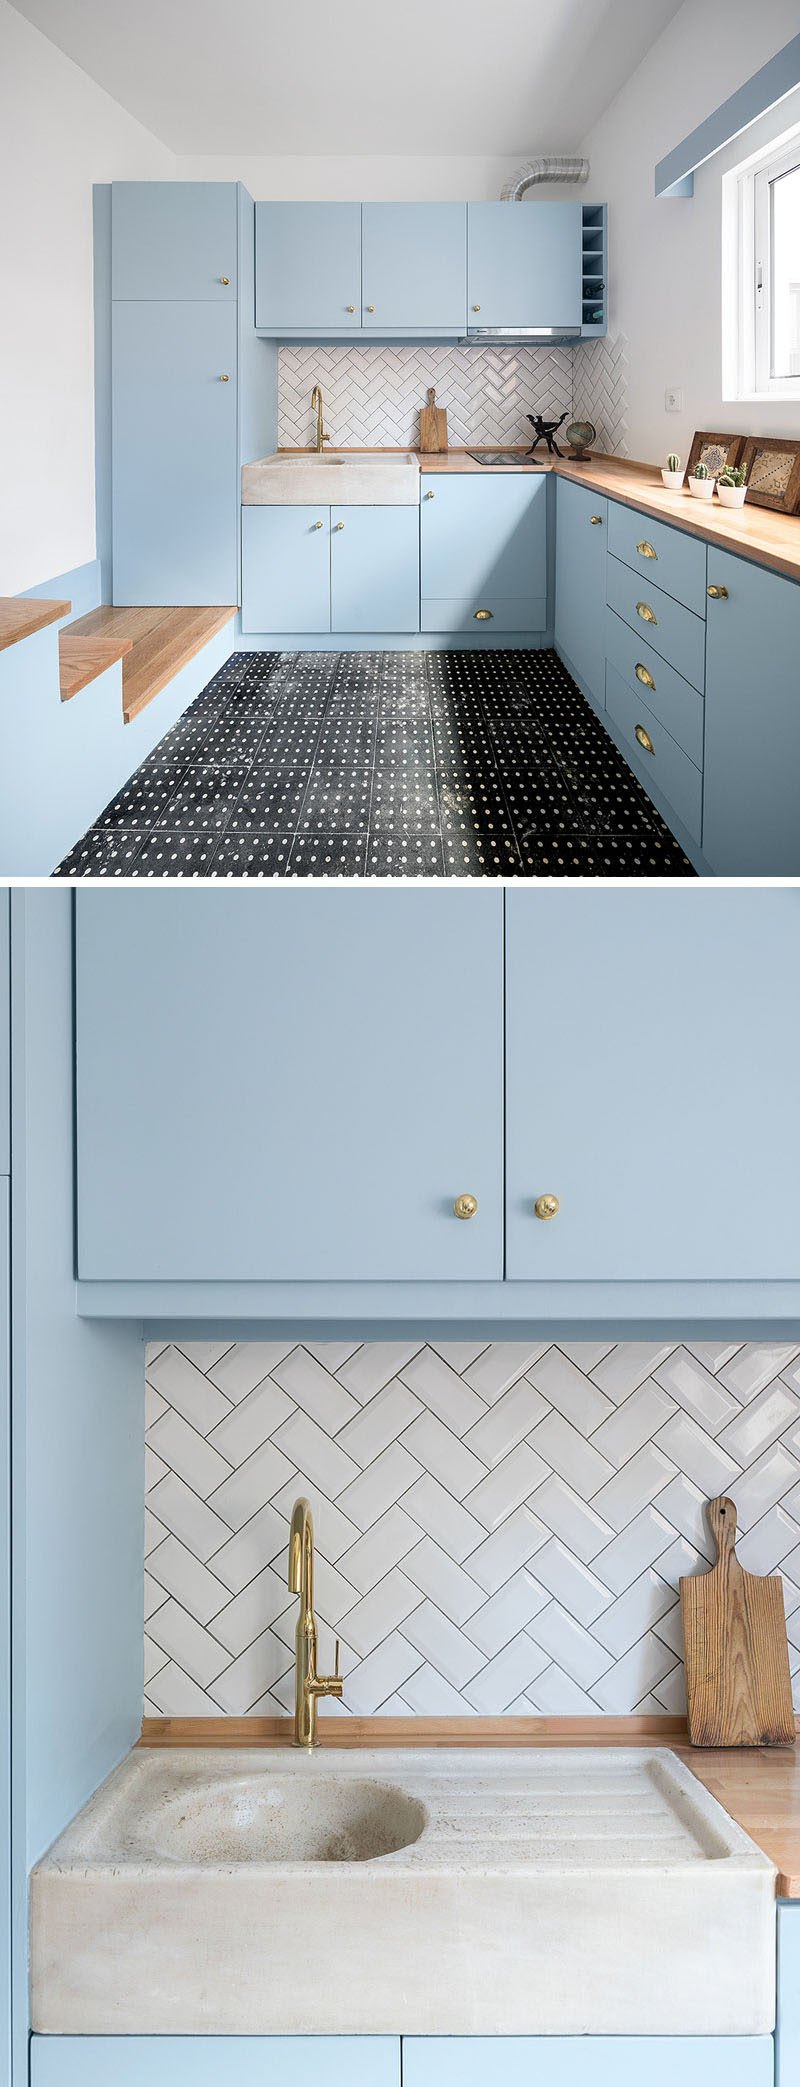 Nhà bếp nhỏ và hiện đại này có tủ màu xanh bột, mặt bàn bằng gỗ và gạch tàu điện ngầm màu trắng theo mô hình xương cá. #K Kitchen #BlueK Kitchen #ModernK Kitchen